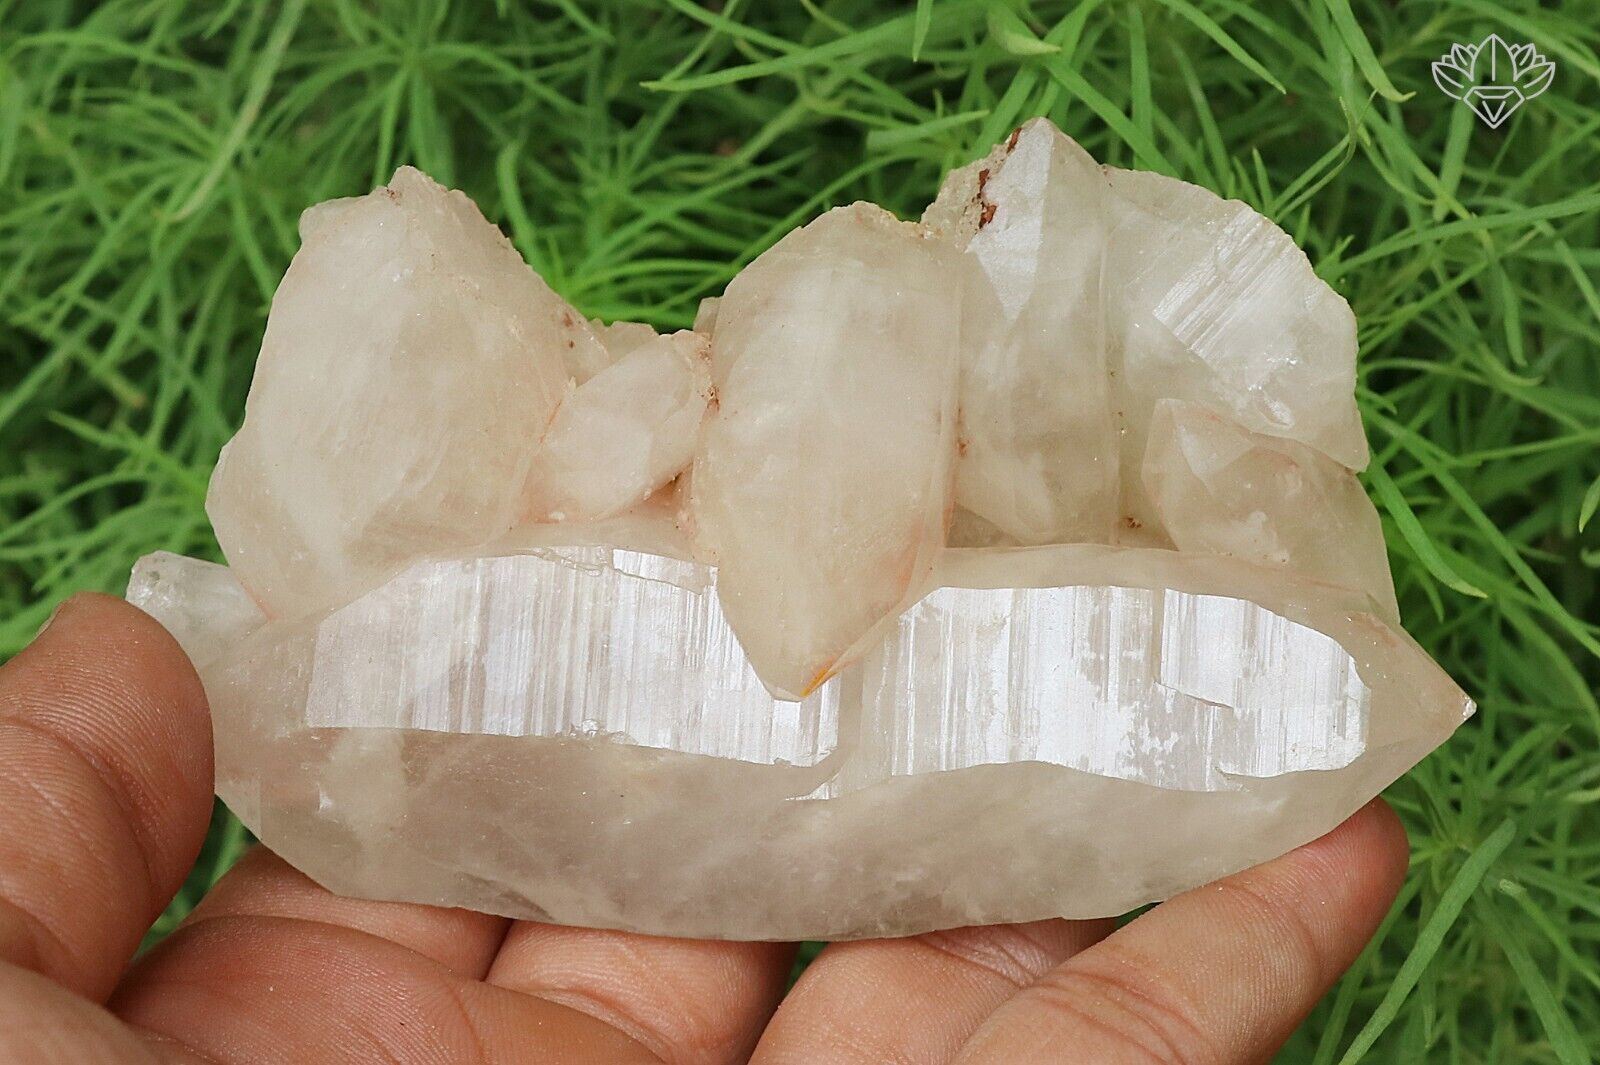 Amezing Natural Healing Crystal Lemurian White Himalayan Crystal 255gm Specimen